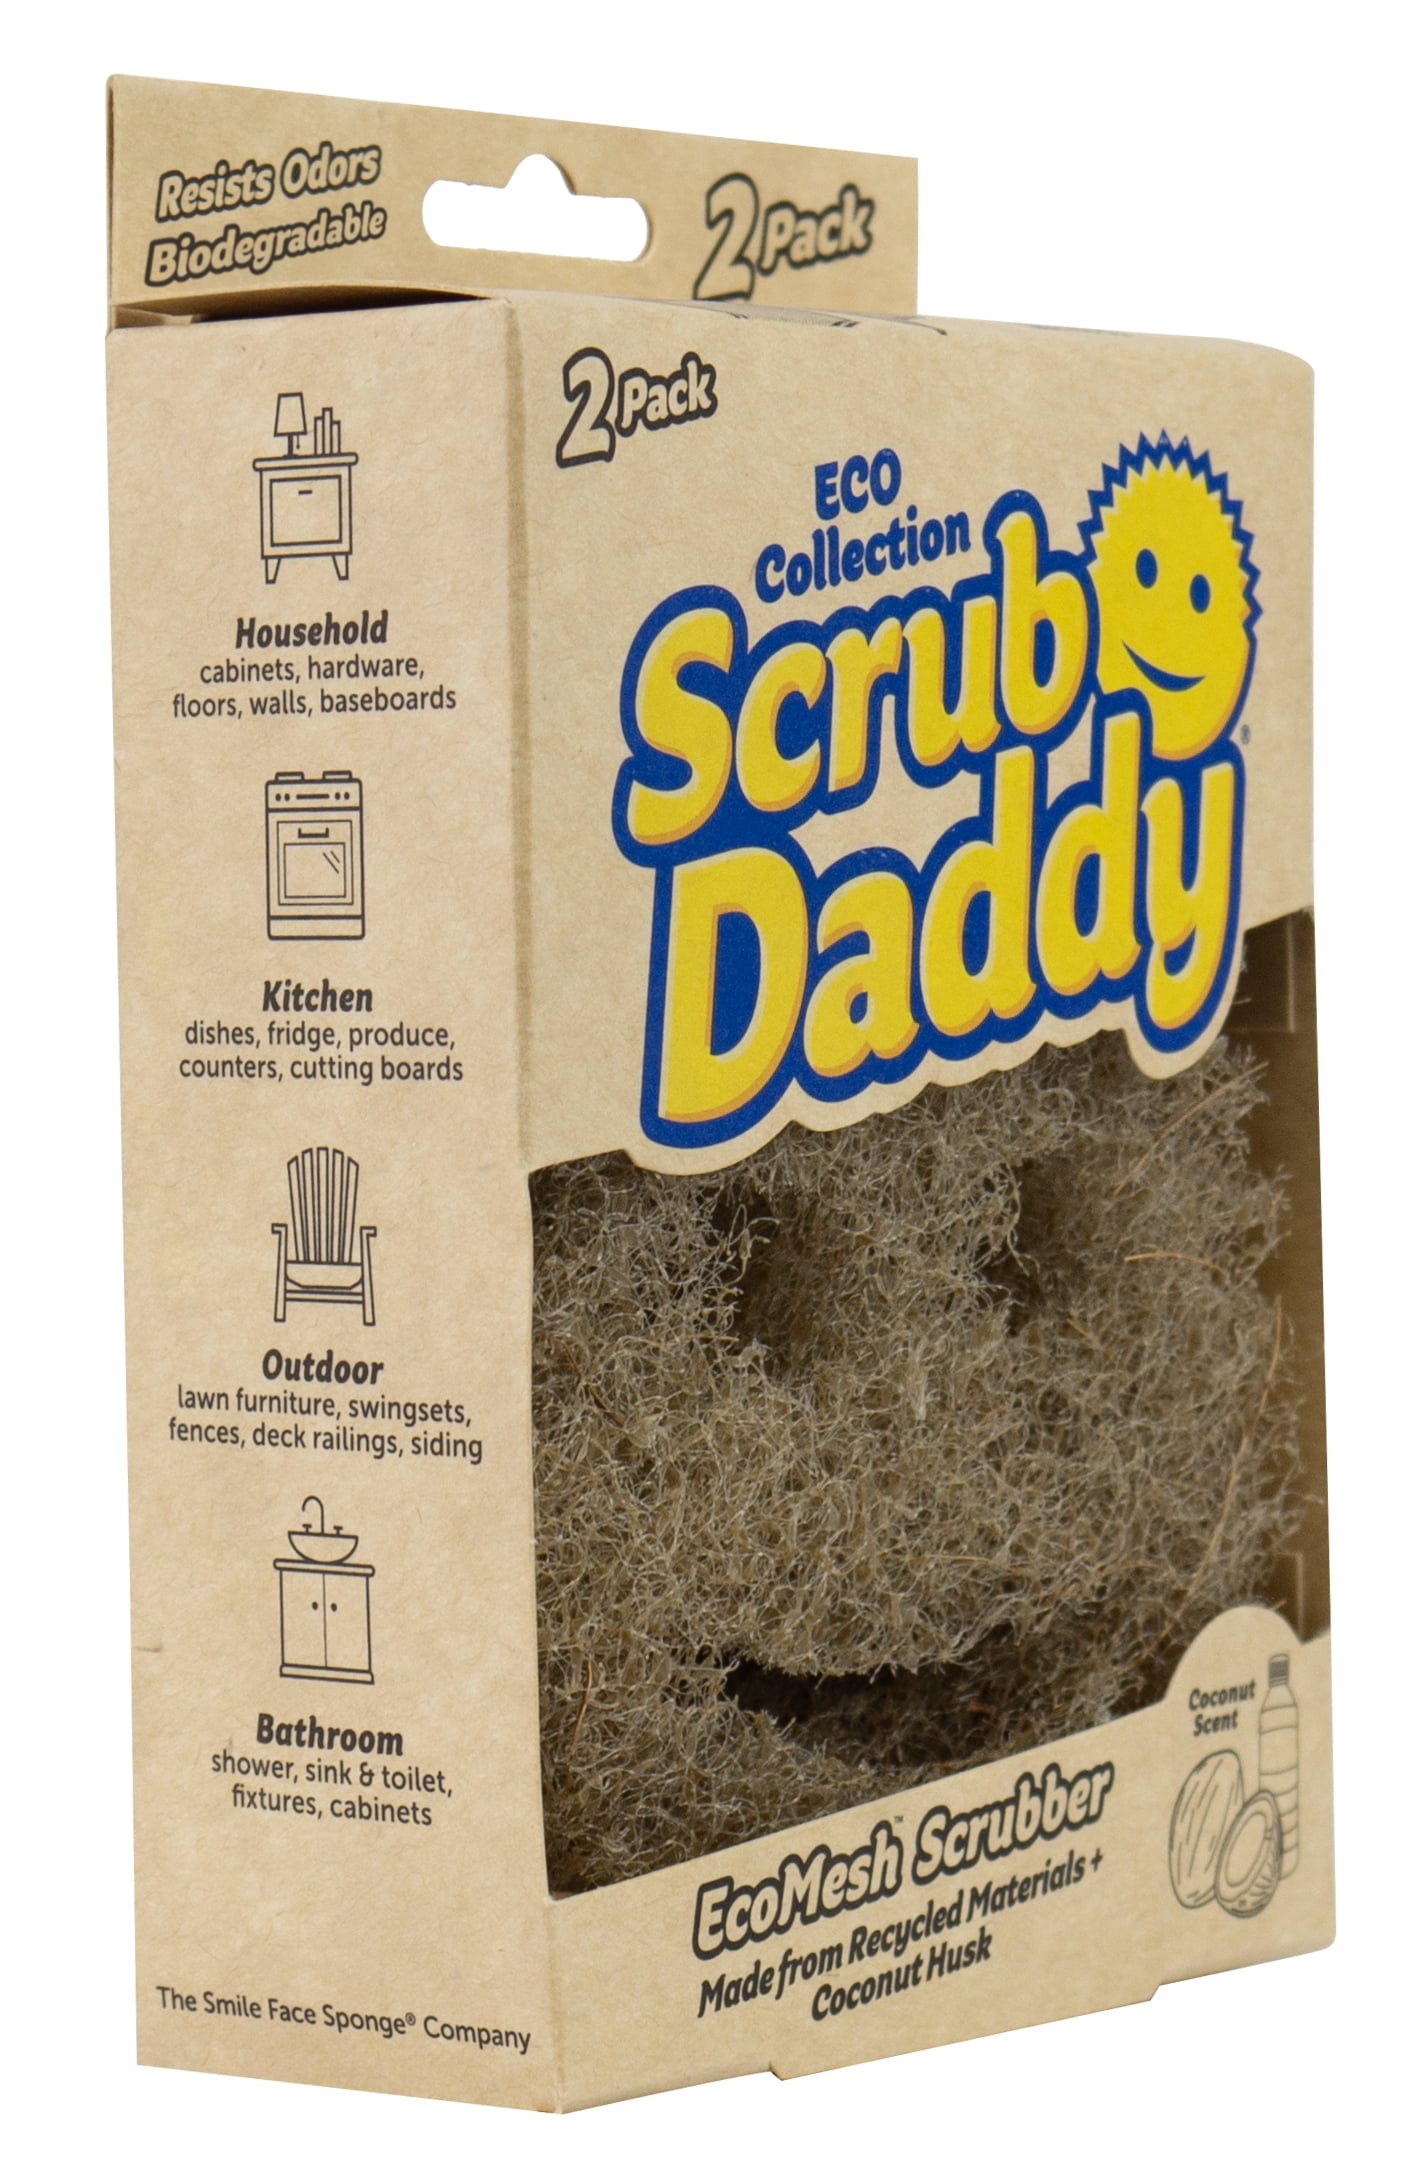 Scrub Daddy ECO Collection Dye Free Sponge - Shop Sponges